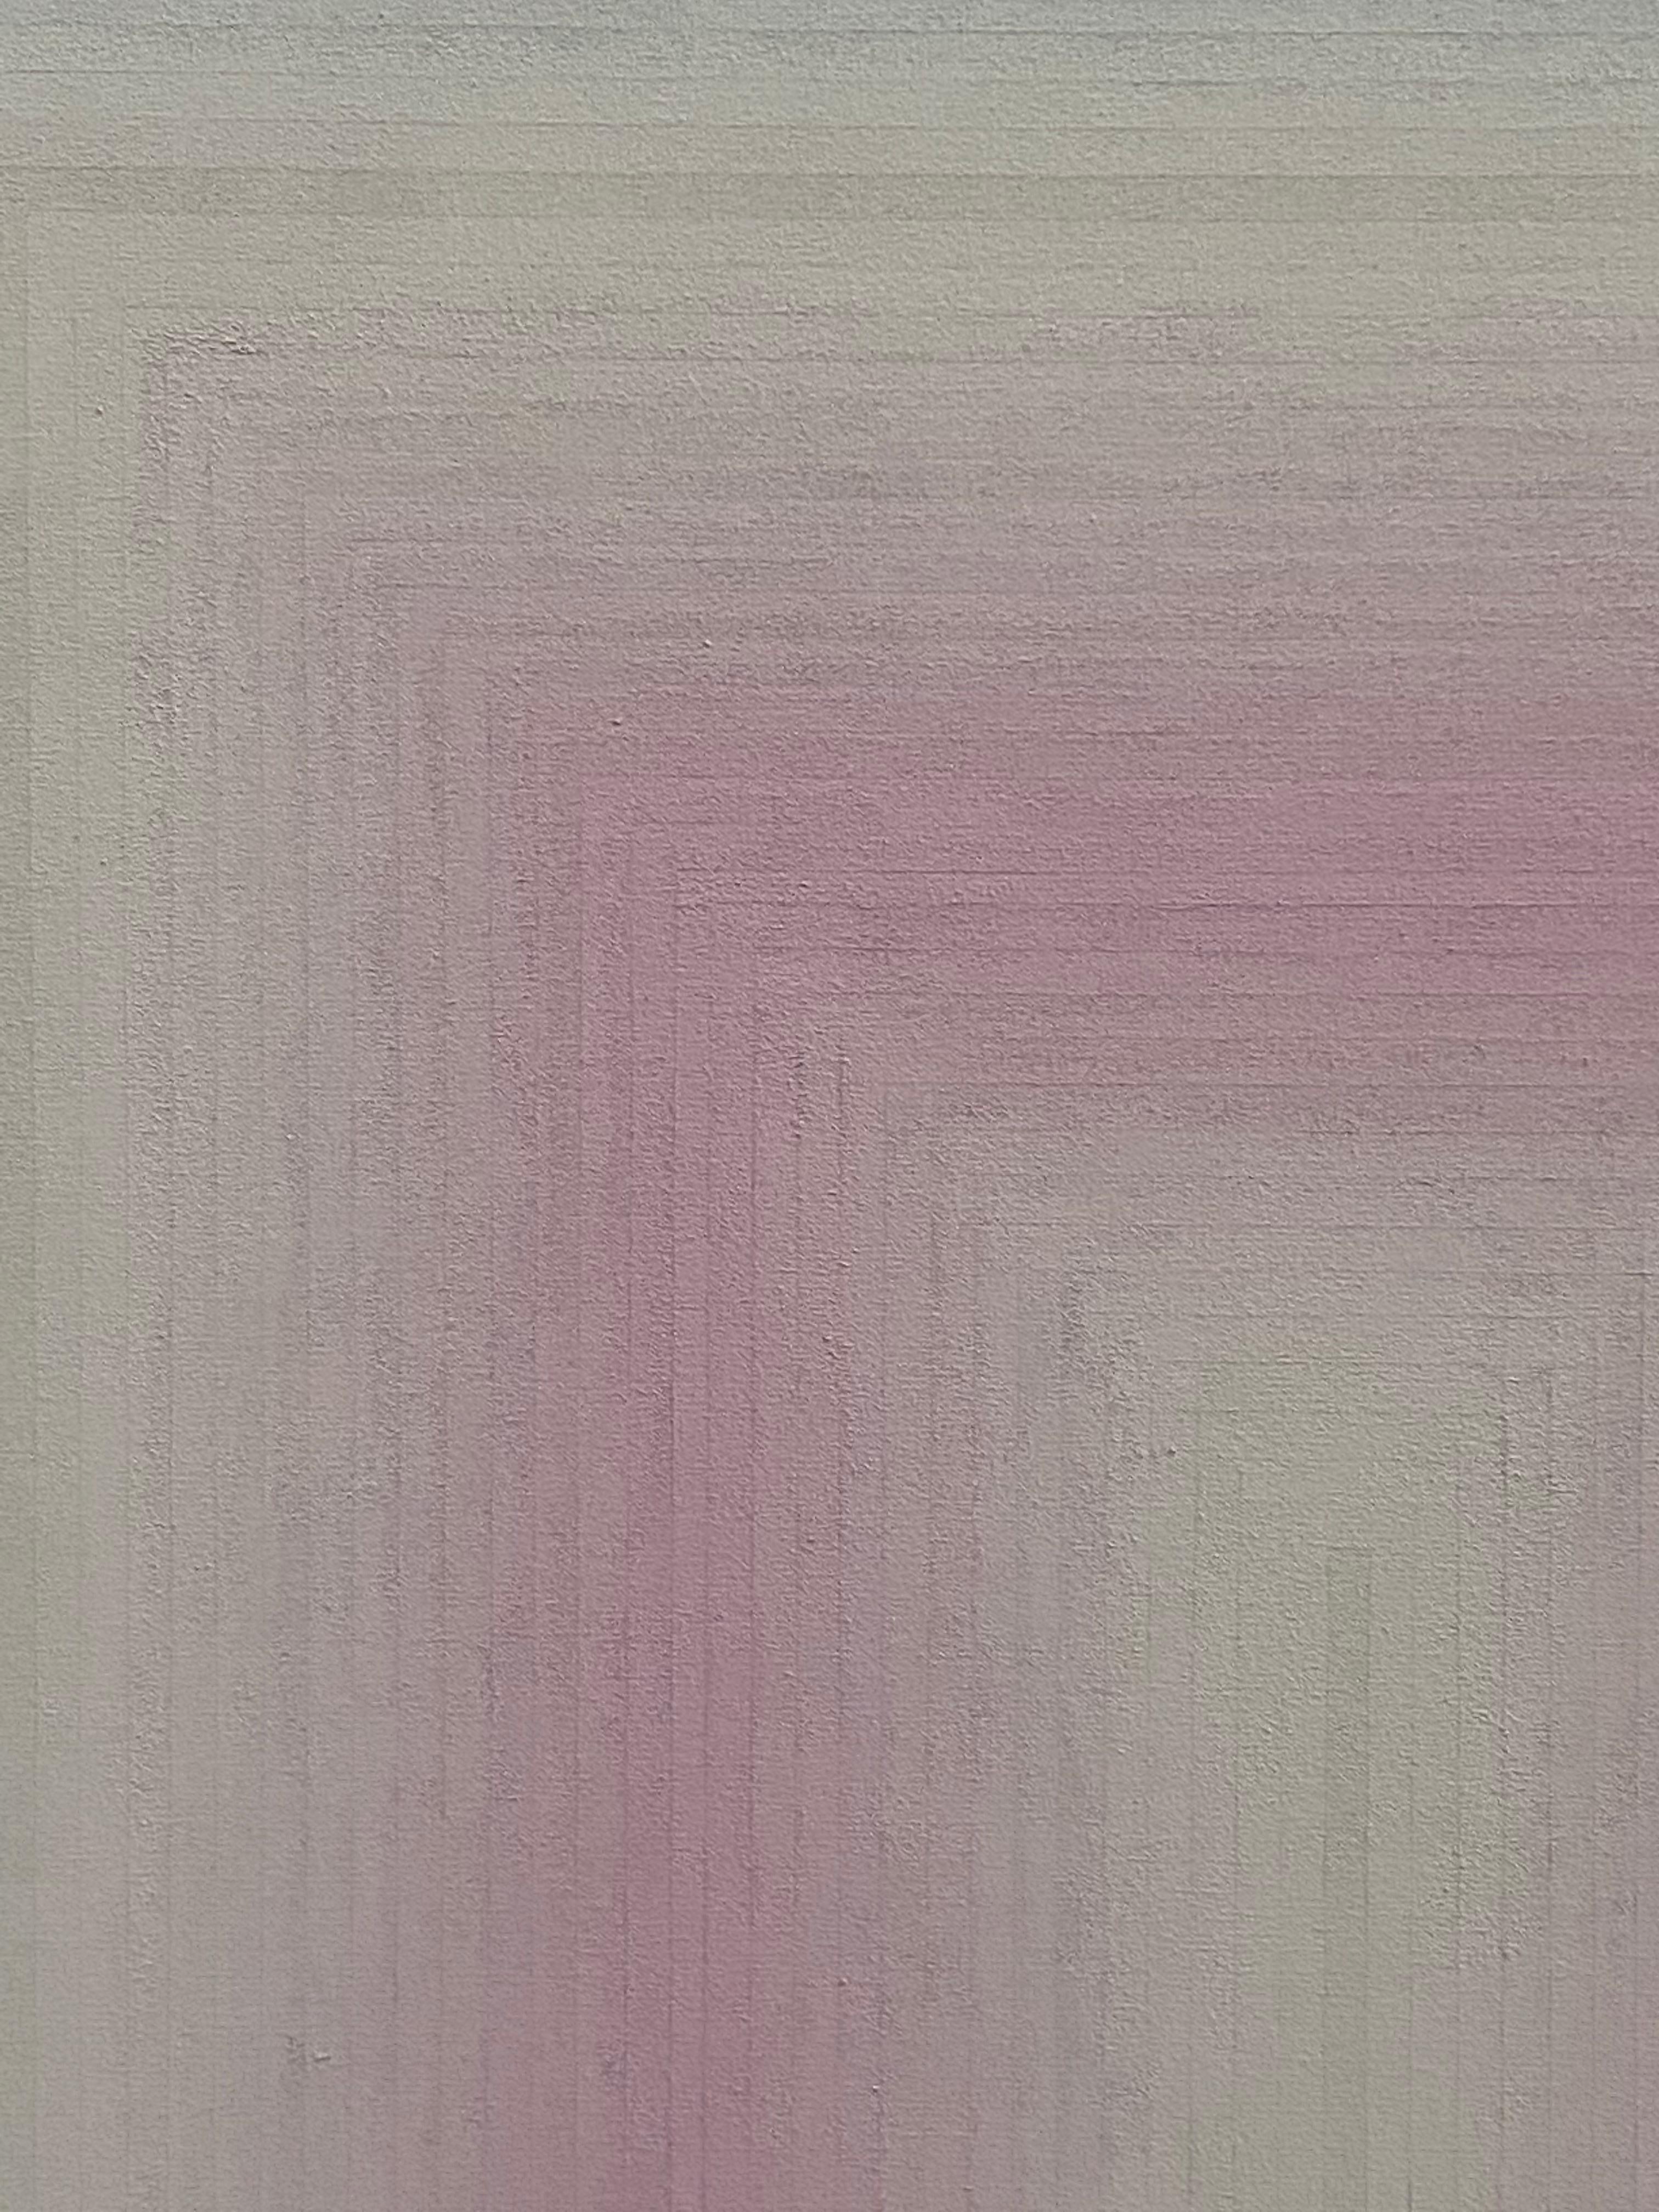 In diesem quadratischen abstrakten Gemälde in Flashe auf Leinwand sind dünne, sorgfältig angeordnete Farbstreifen in sanften Farbabstufungen zu sehen, beginnend mit einem blassen Grauton in der Mitte über helles Lila, sanftes Grau und blasses